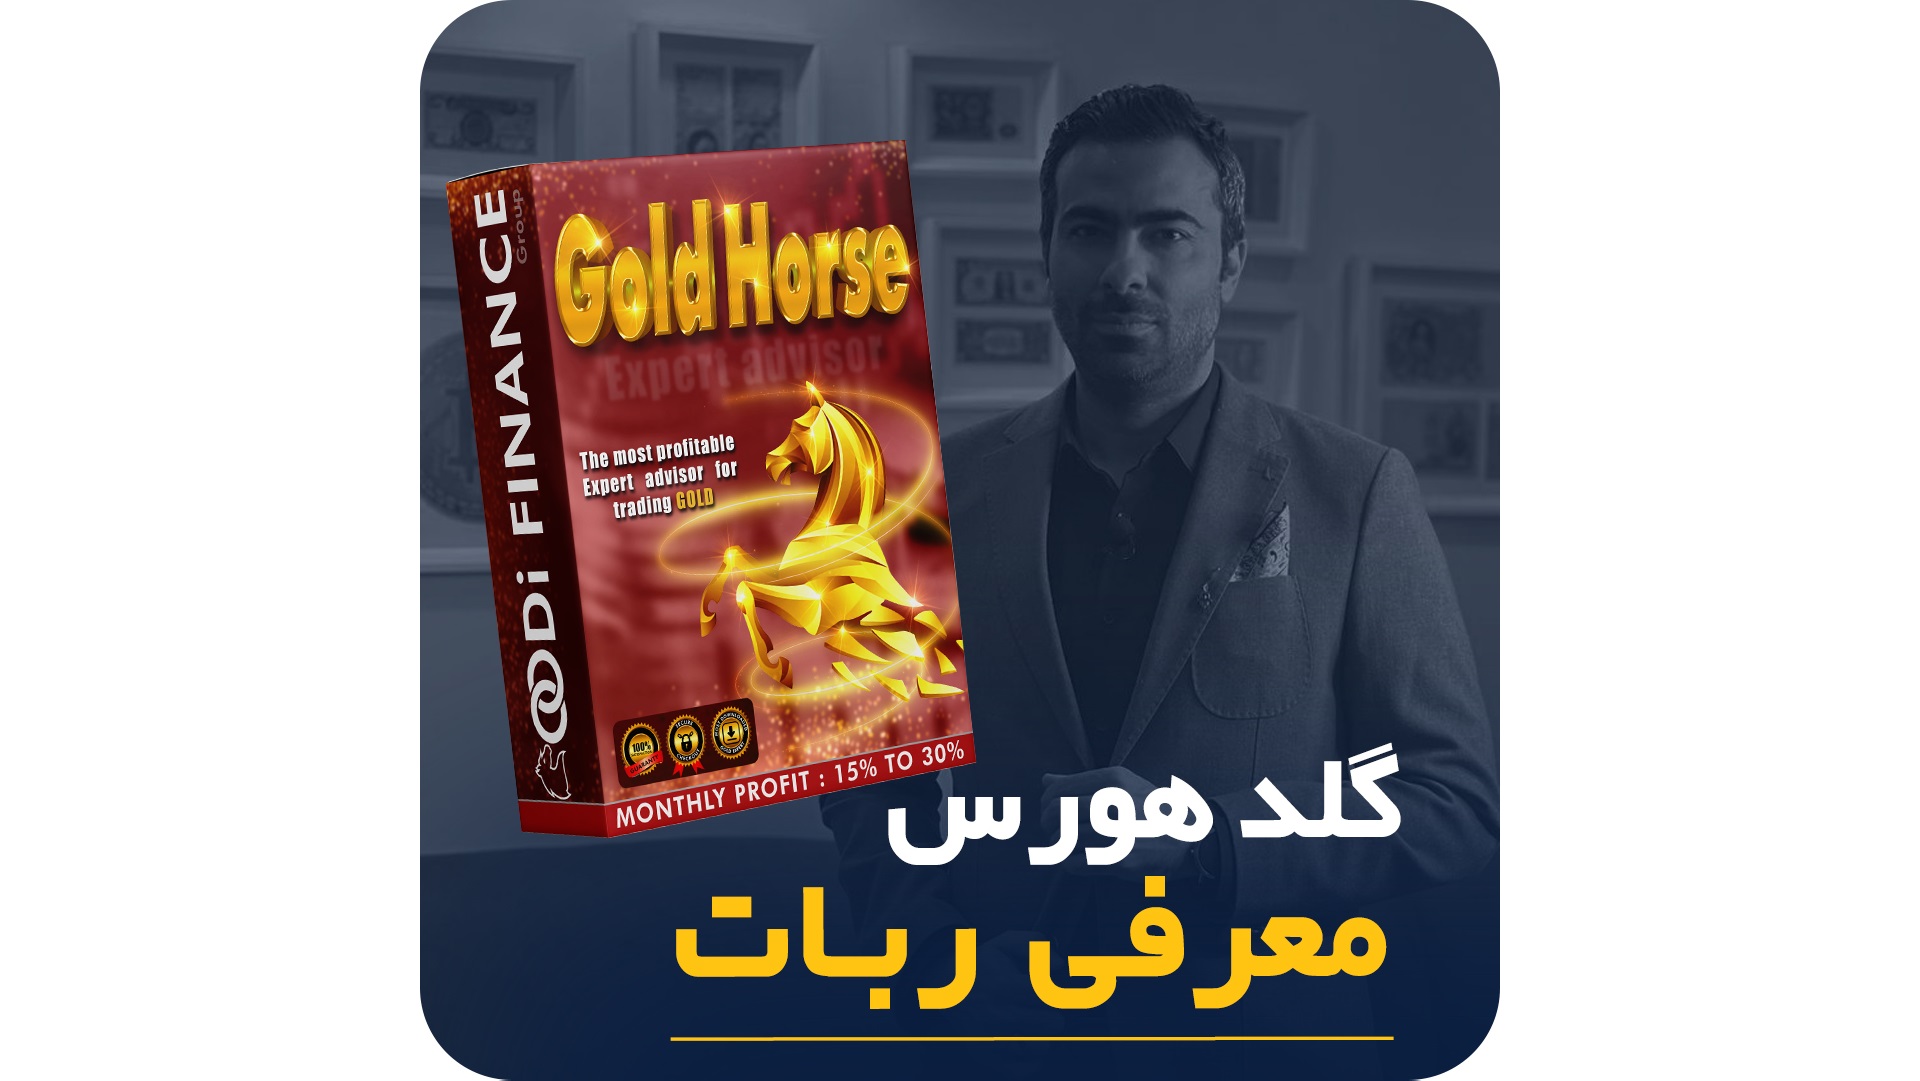 معرفی و بررسی دستیار ترید گلدهورس - Gold Horse